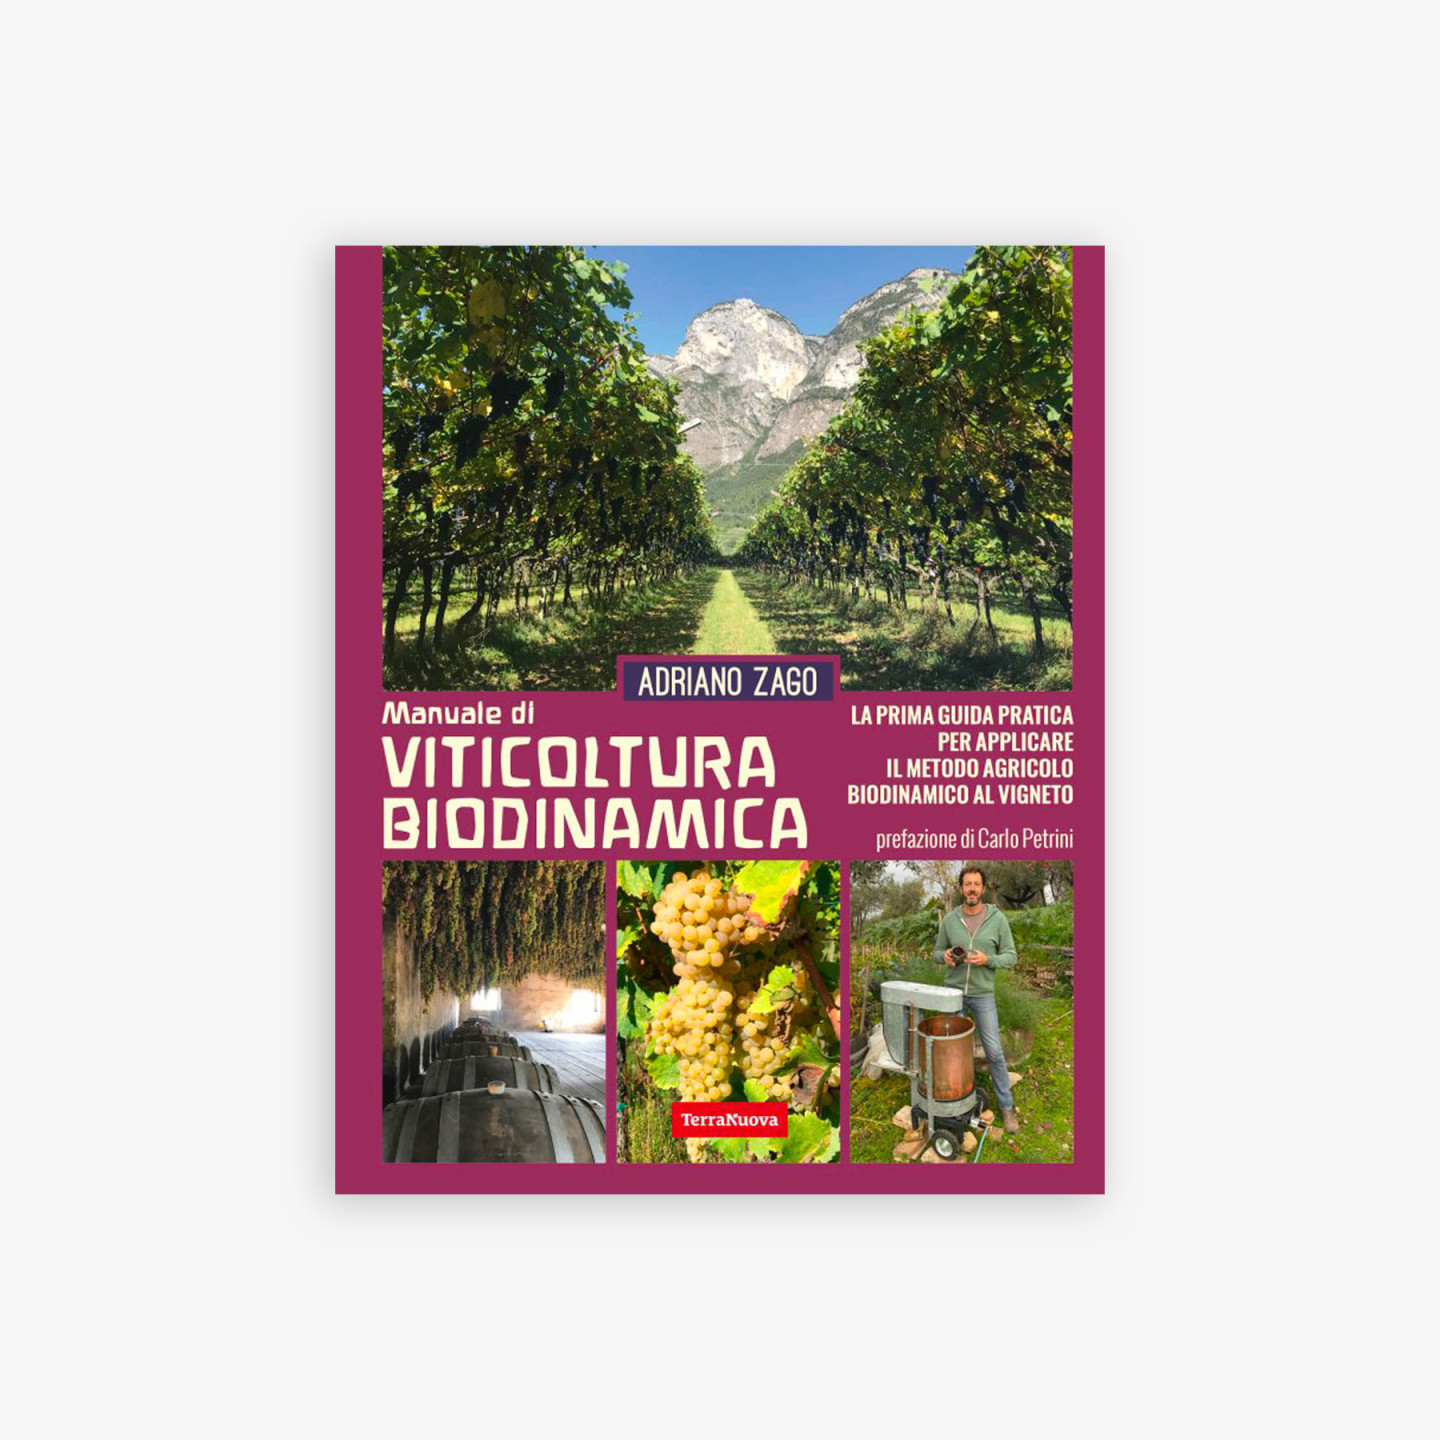 NaturaSi-Libro-del-mese-manuale-viticoltura-biodinamica